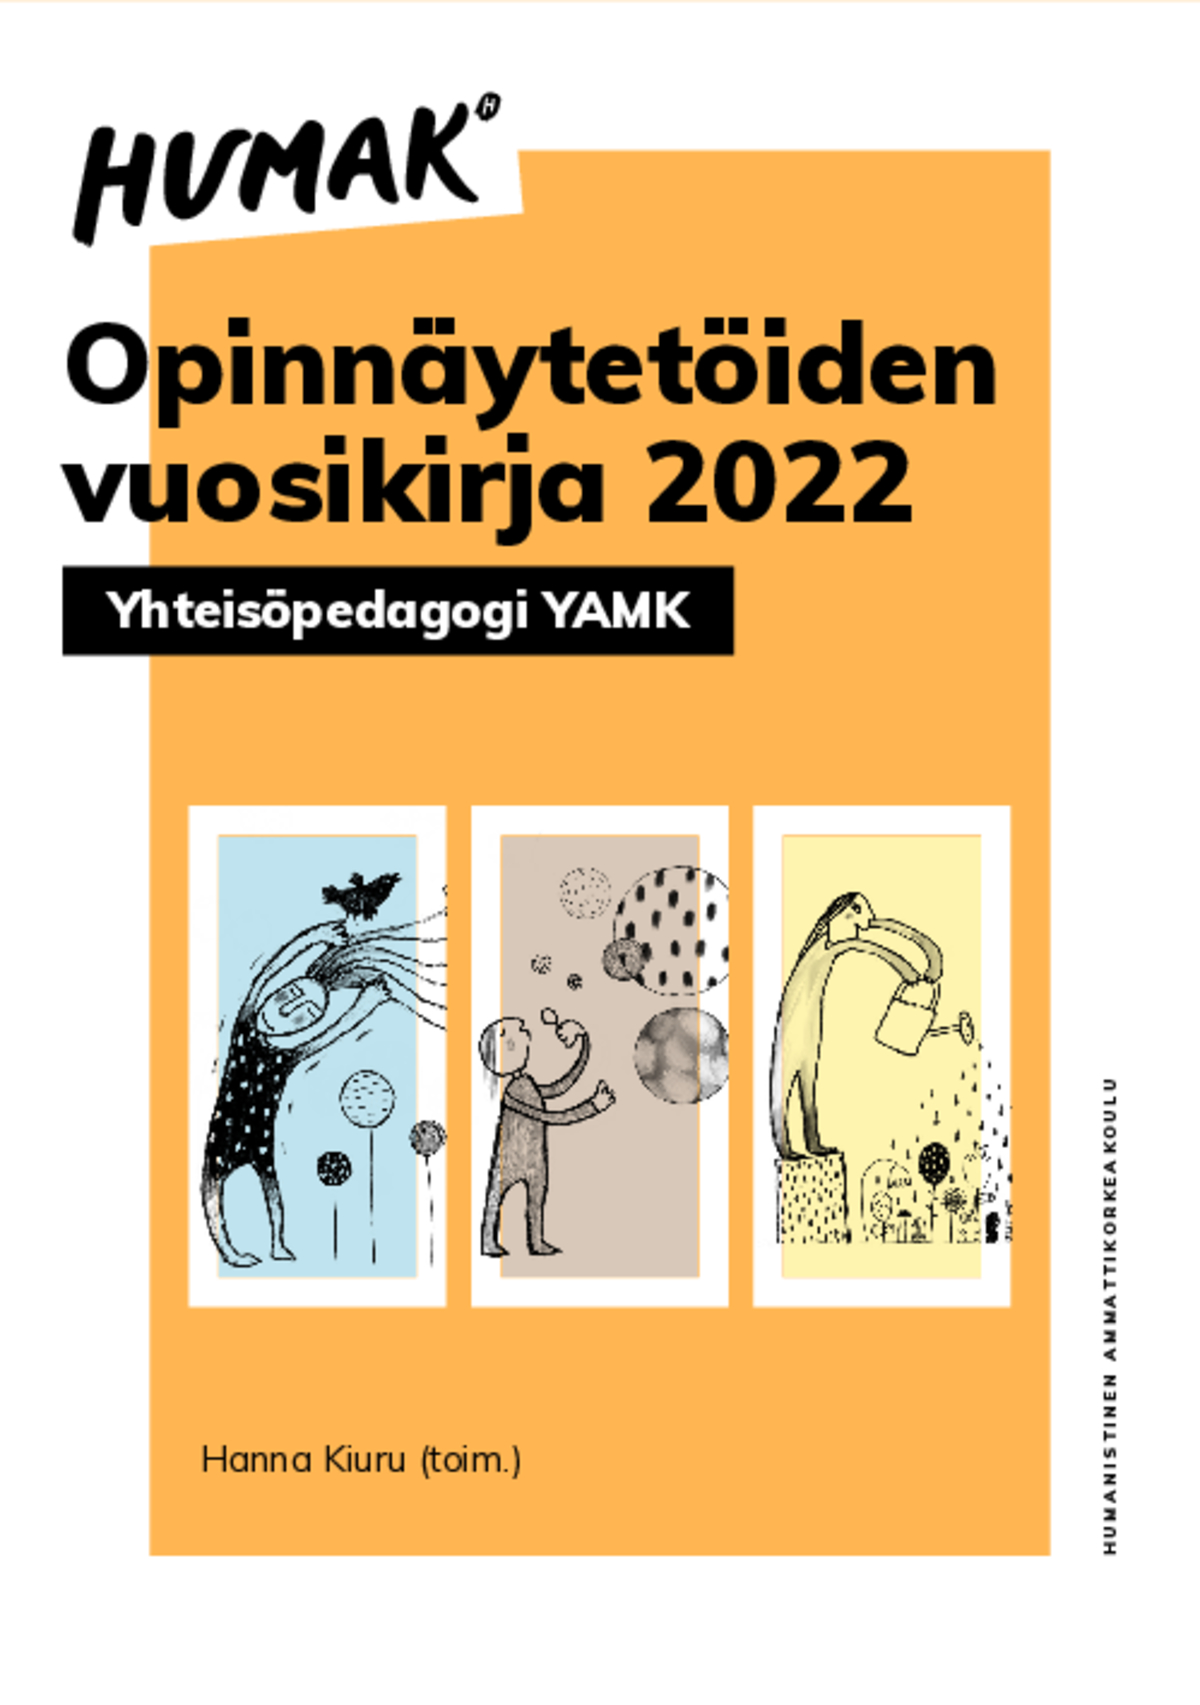 Hanna Kiuru (toim.) Opinnäytetöiden vuosikirja 2022 – Yhteisöpedagogi YAMK